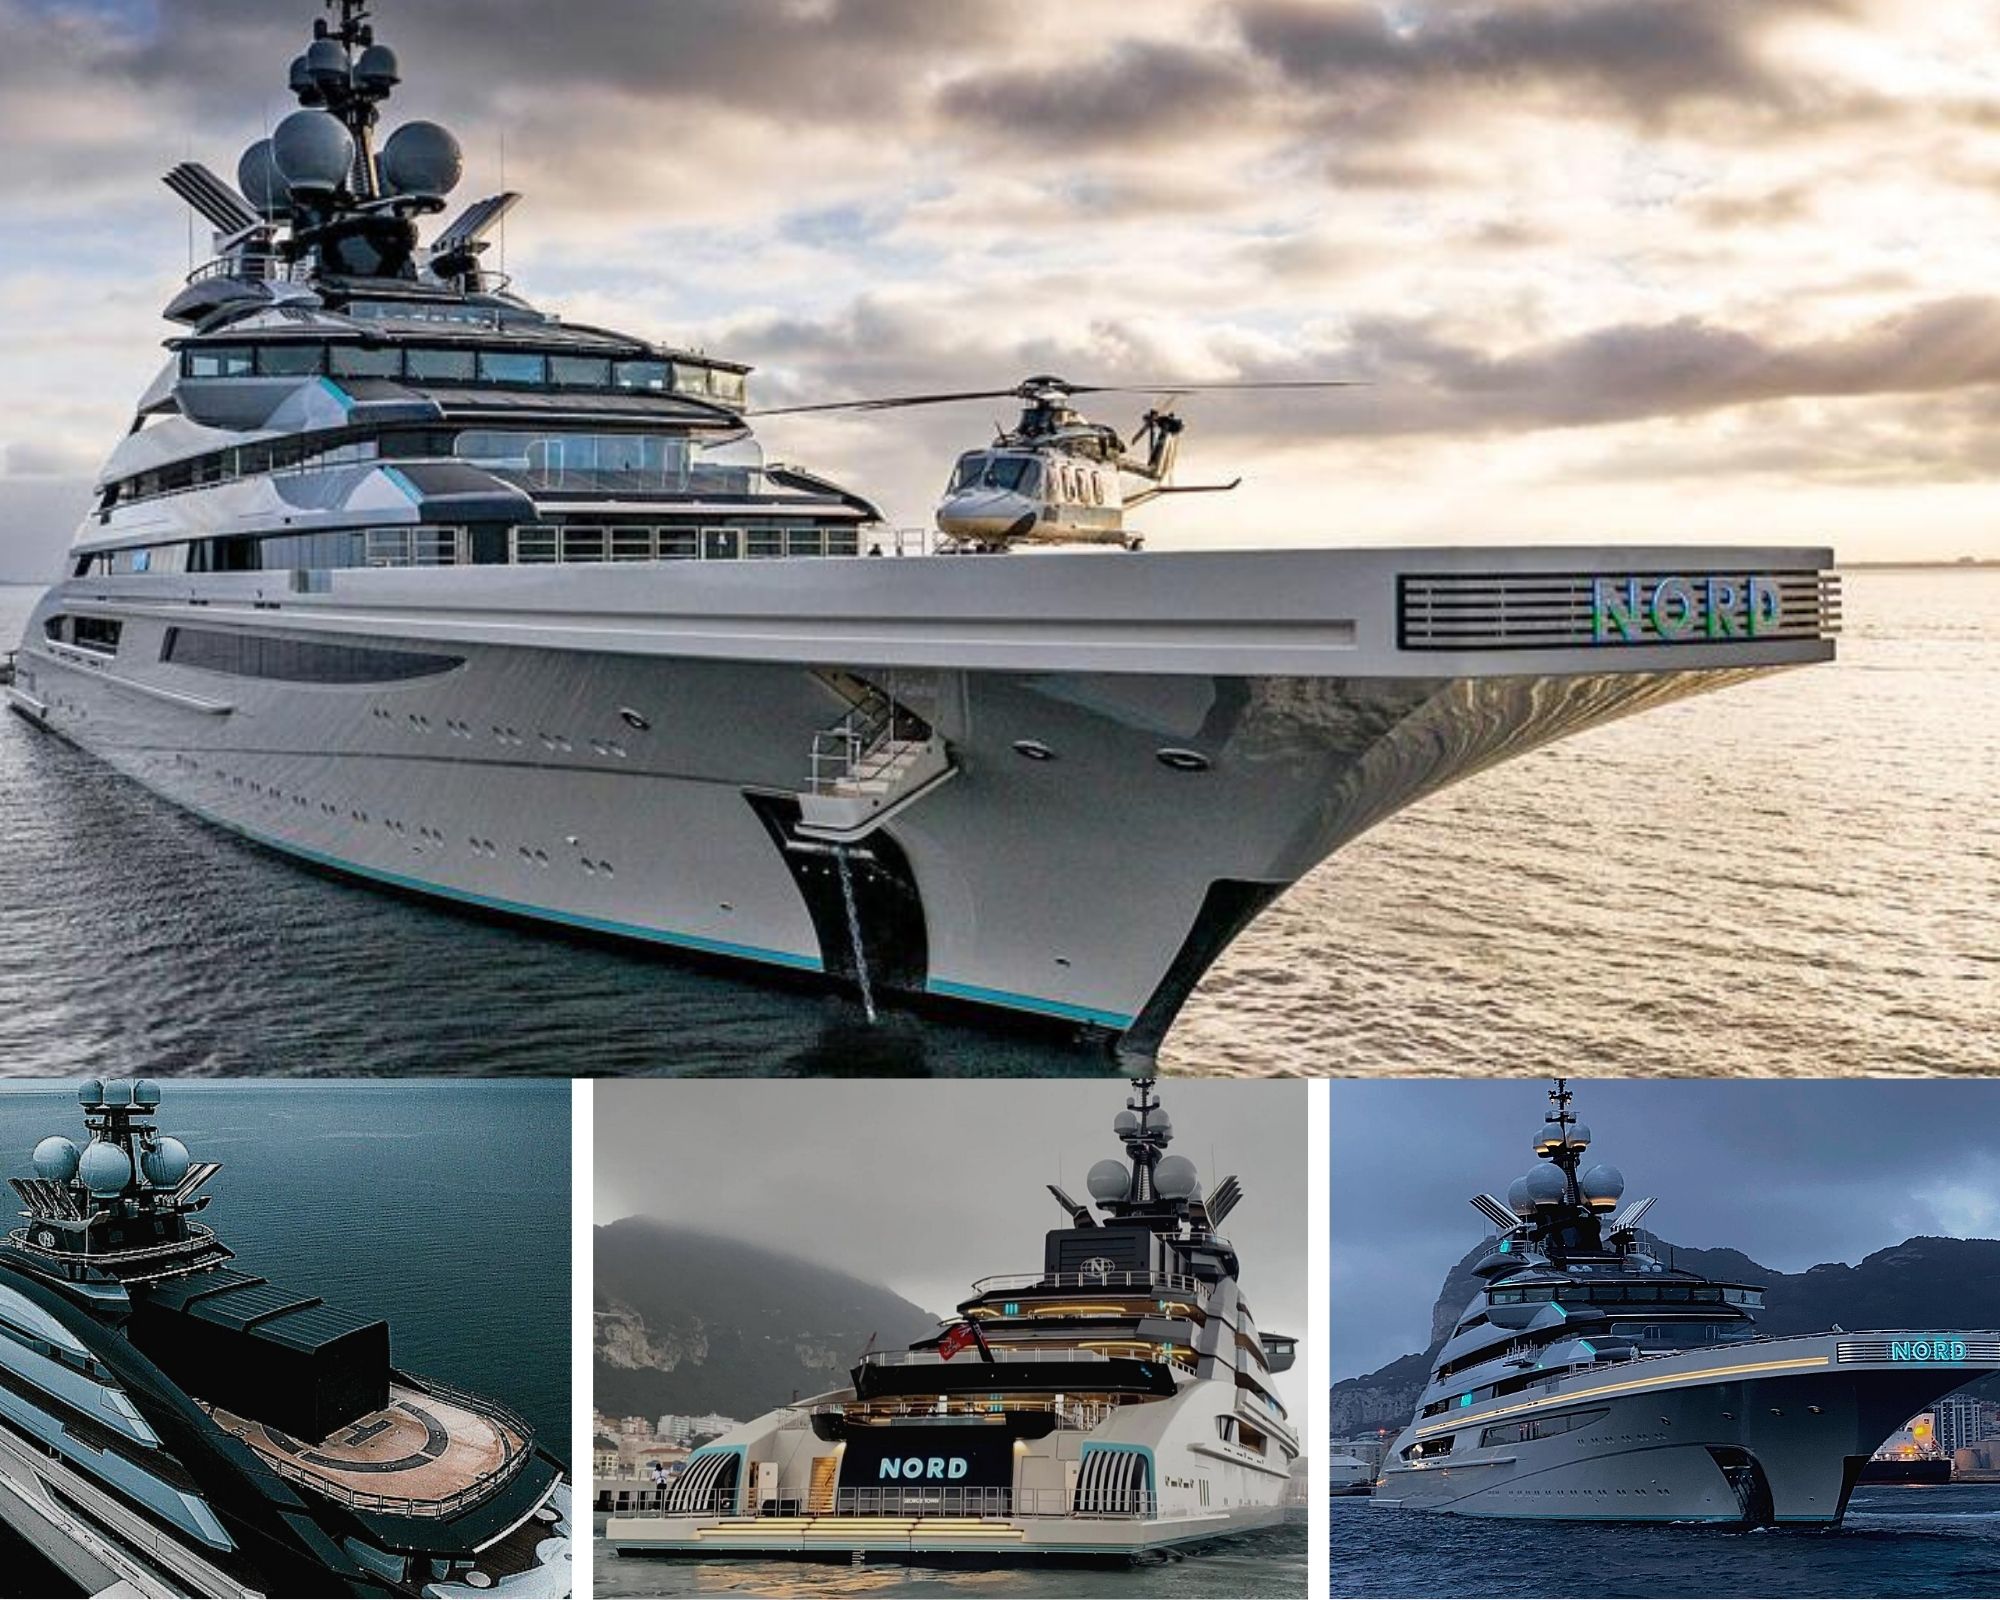 Luxury Mega yacht "Nord" de 140 metros in Mallorca